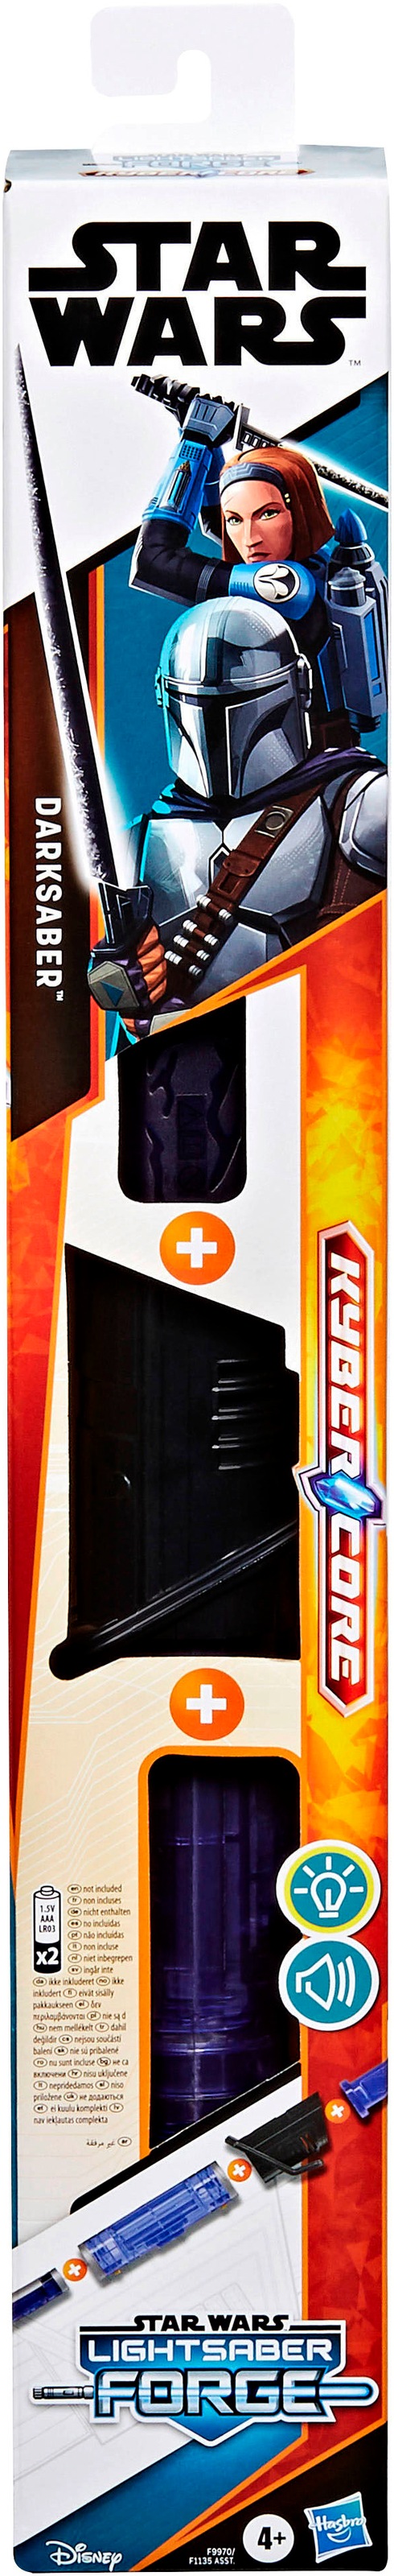 Hasbro Lichtschwert »Star Wars Lightsaber Forge Kyber Core Darksaber«, elektronisches Lichtschwert; mit Licht und Sound